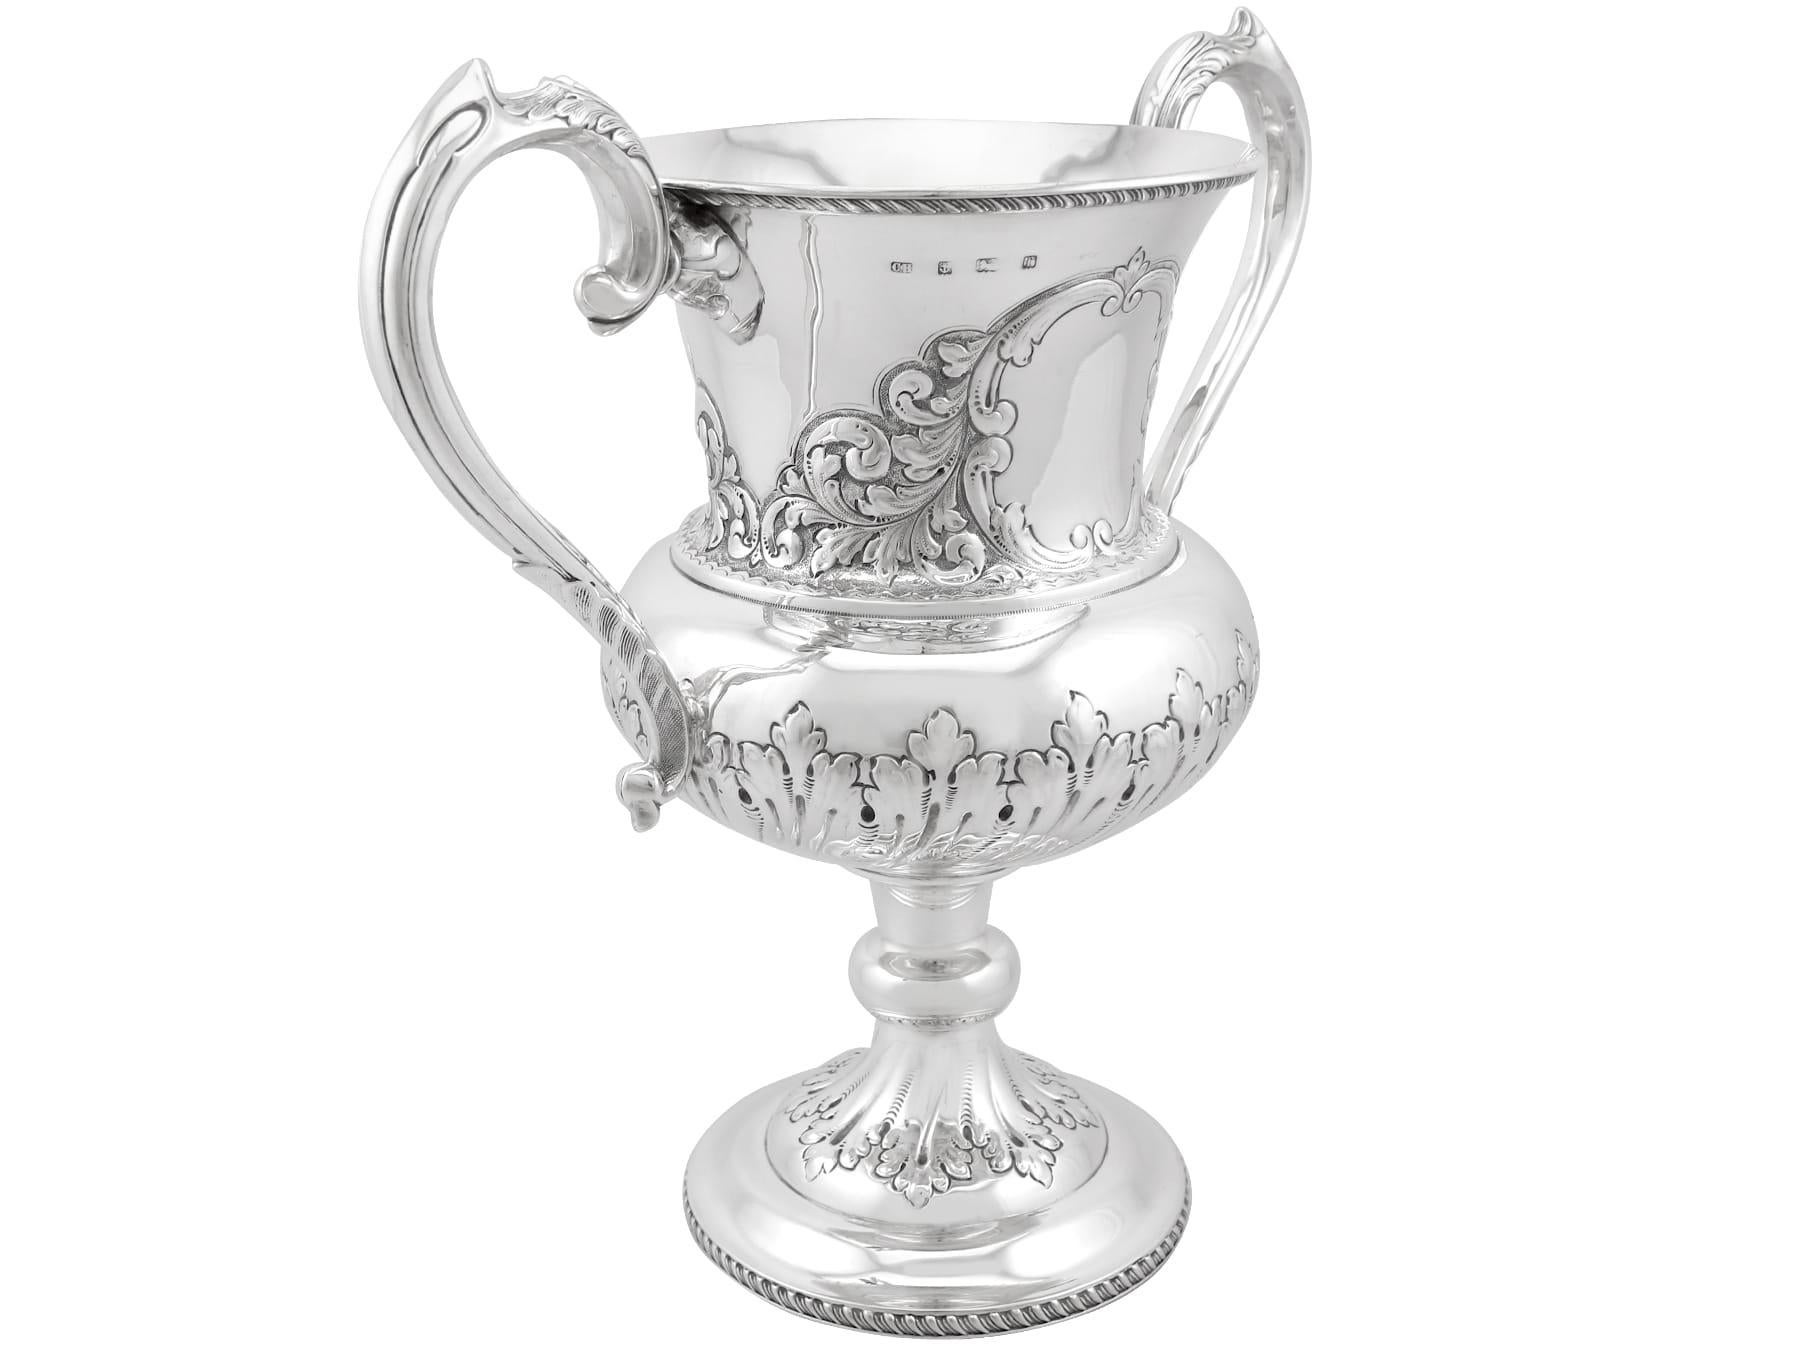 Eine außergewöhnliche, feine und beeindruckende antike edwardianische englische Sterling Silber Präsentation Tasse; eine Ergänzung zu unserer Präsentation Silberwaren Sammlung.

Diese außergewöhnliche Edwardian Sterling Silber Präsentation Tasse hat